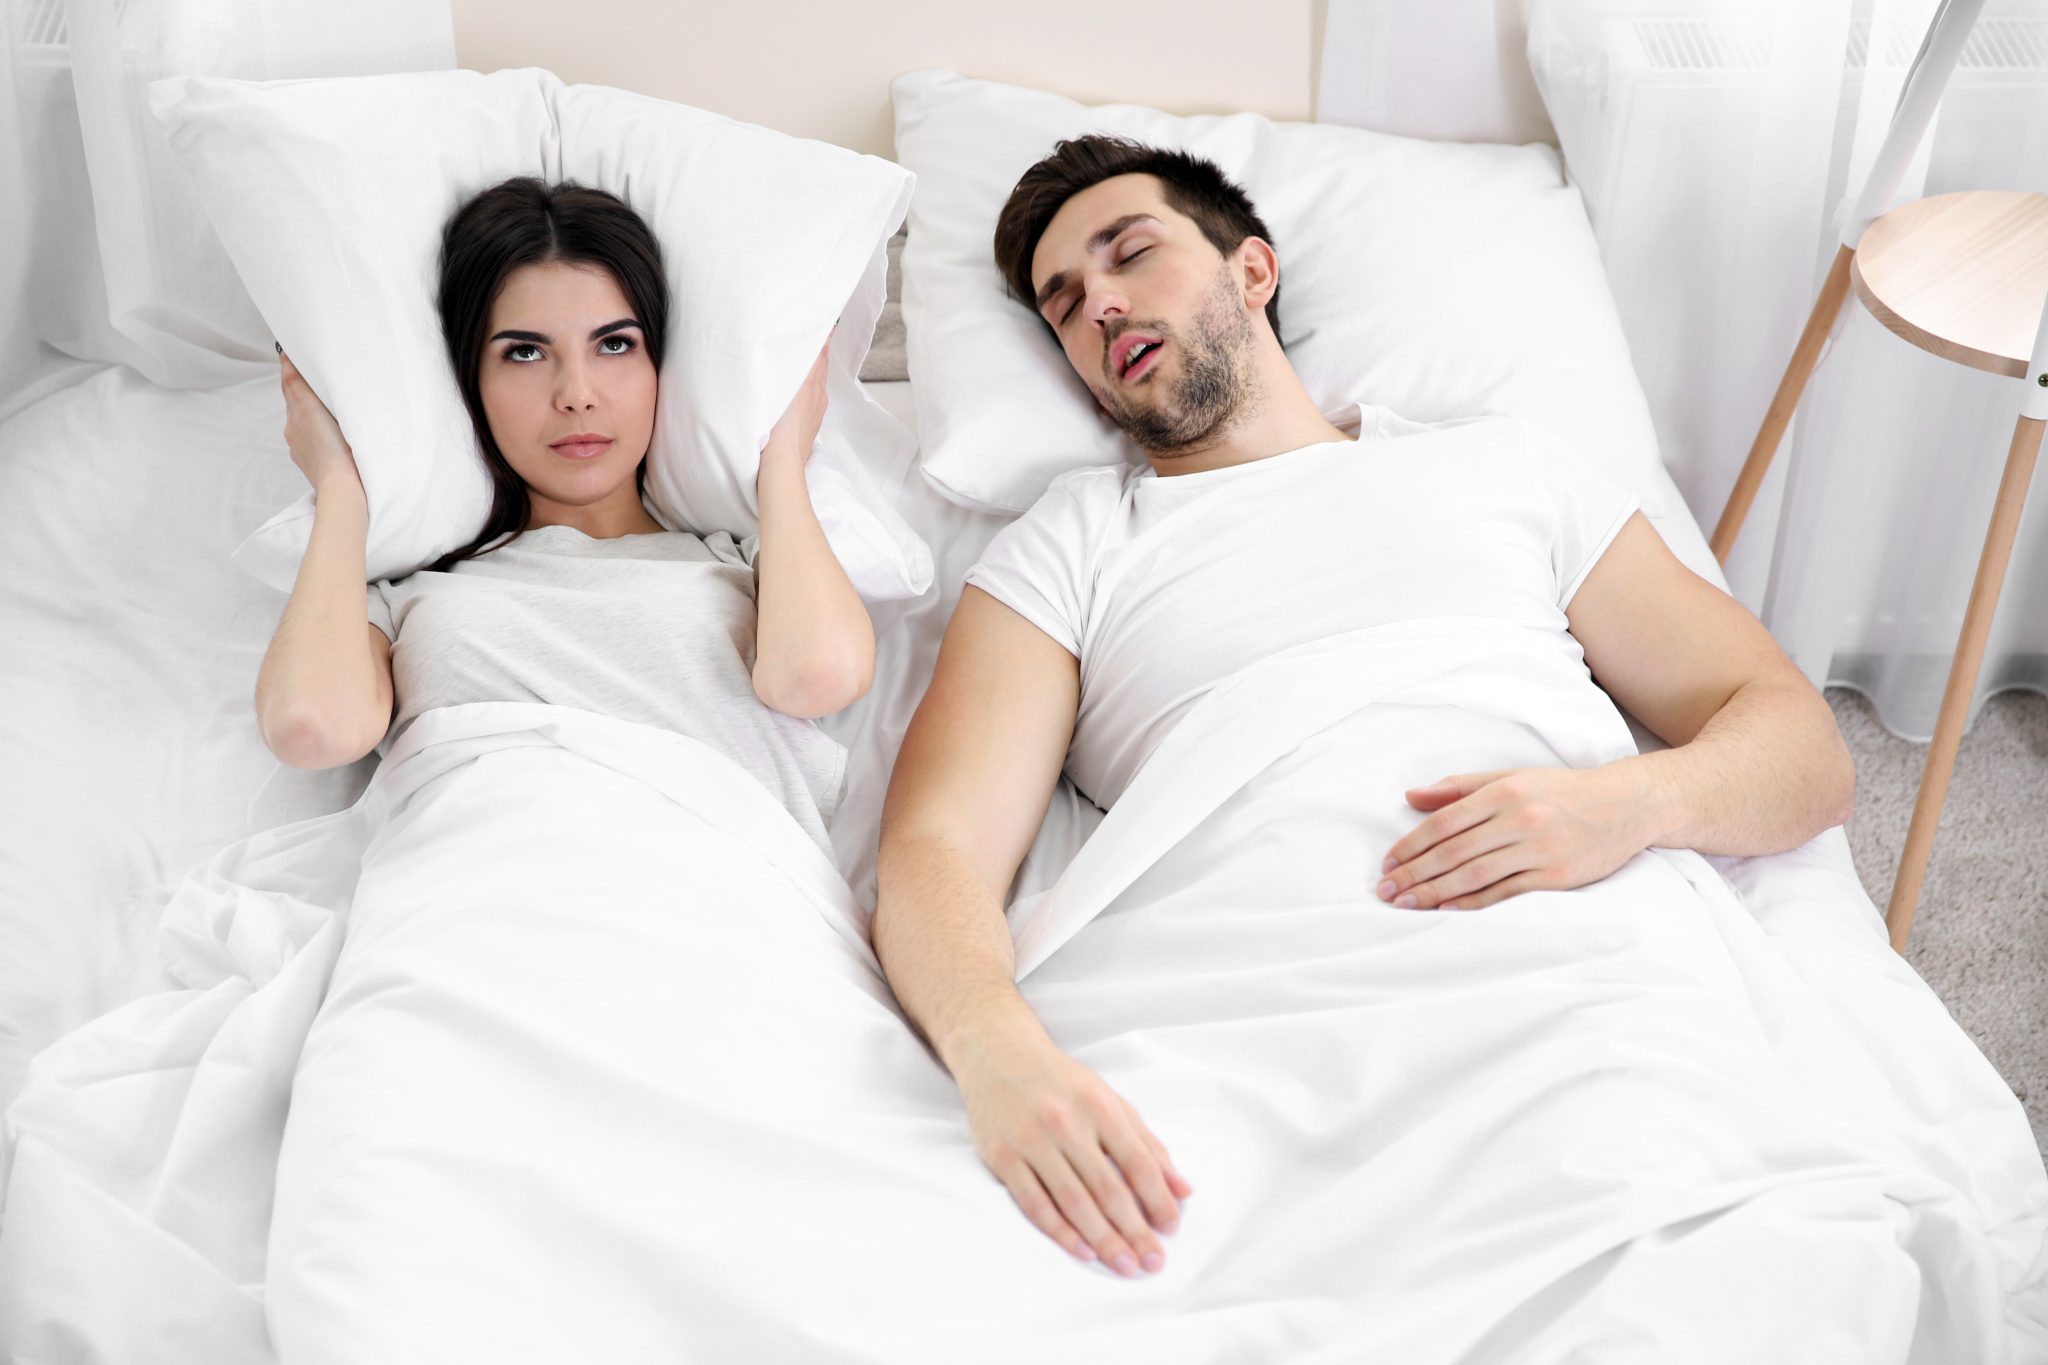 Выйти замуж за бывшего мужа во сне. Храп фото. В спальне храпящие супруги. Сон в разных комнатах. Фотосессия в пижаме на кровати.